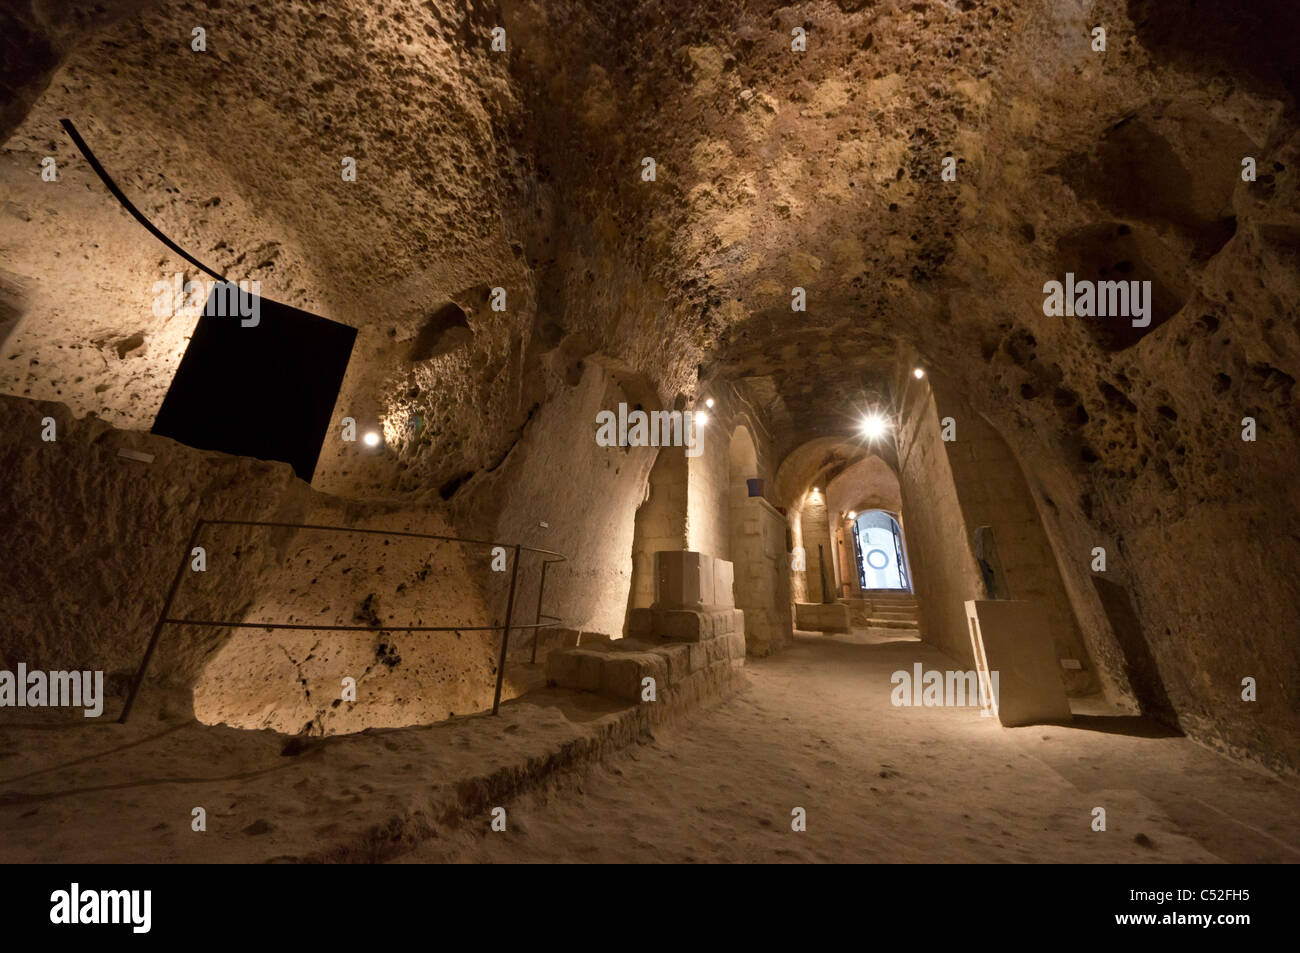 Italia - El único MUSMA galería de arte situada en cuevas del sitio de la UNESCO, el Sasso Caveoso de Matera. Foto de stock